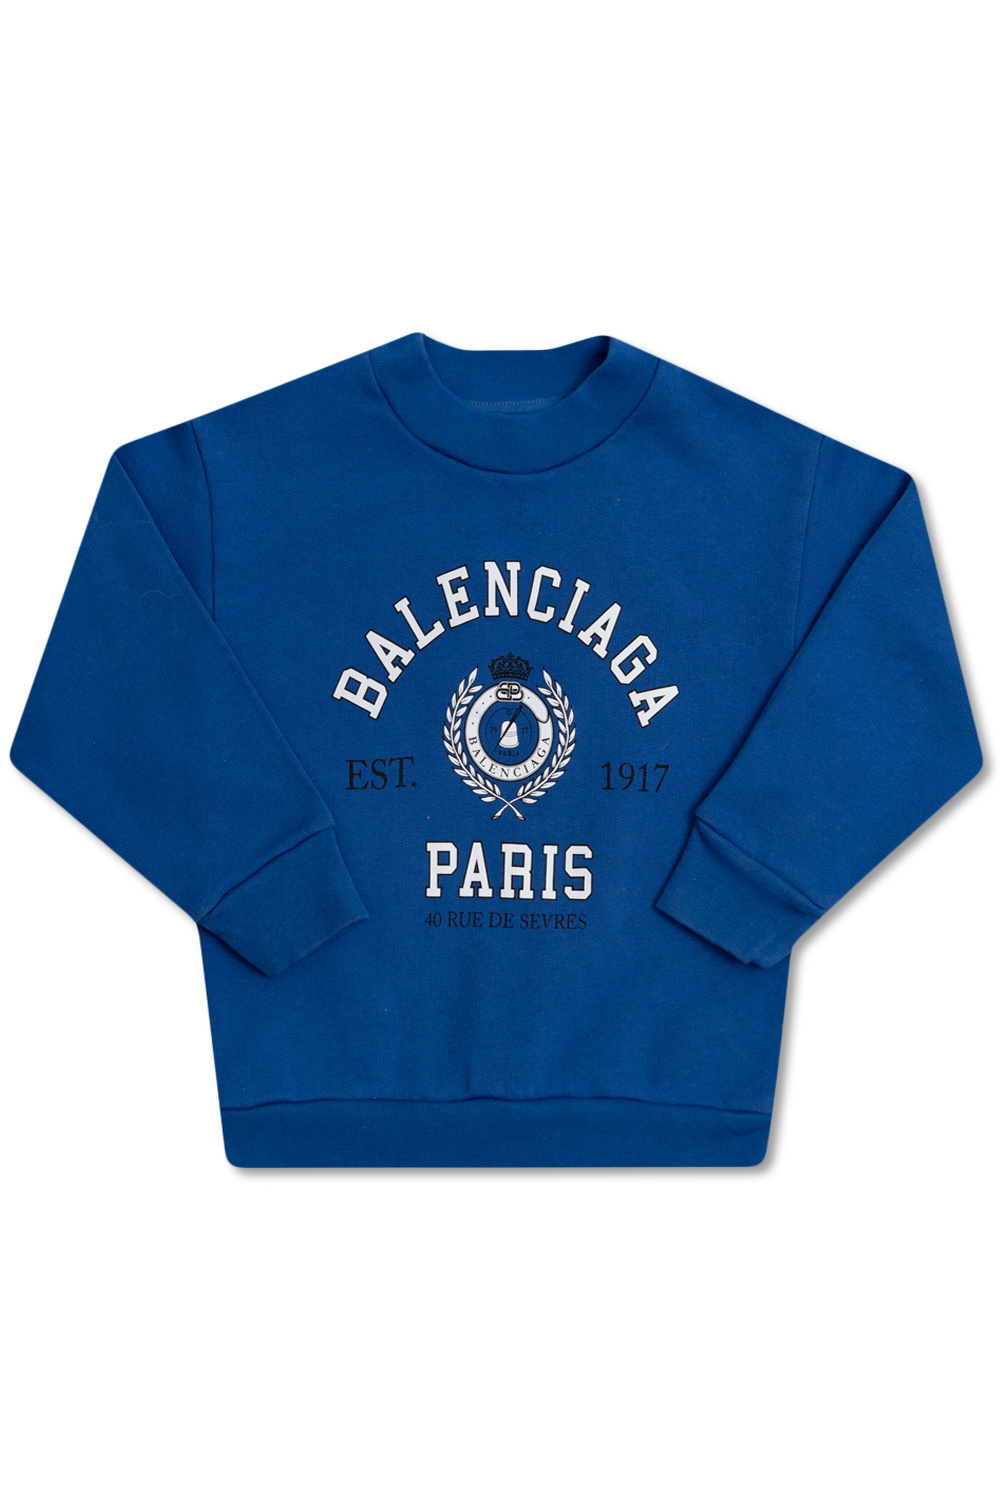 Balenciaga Kids for the spring-summer season